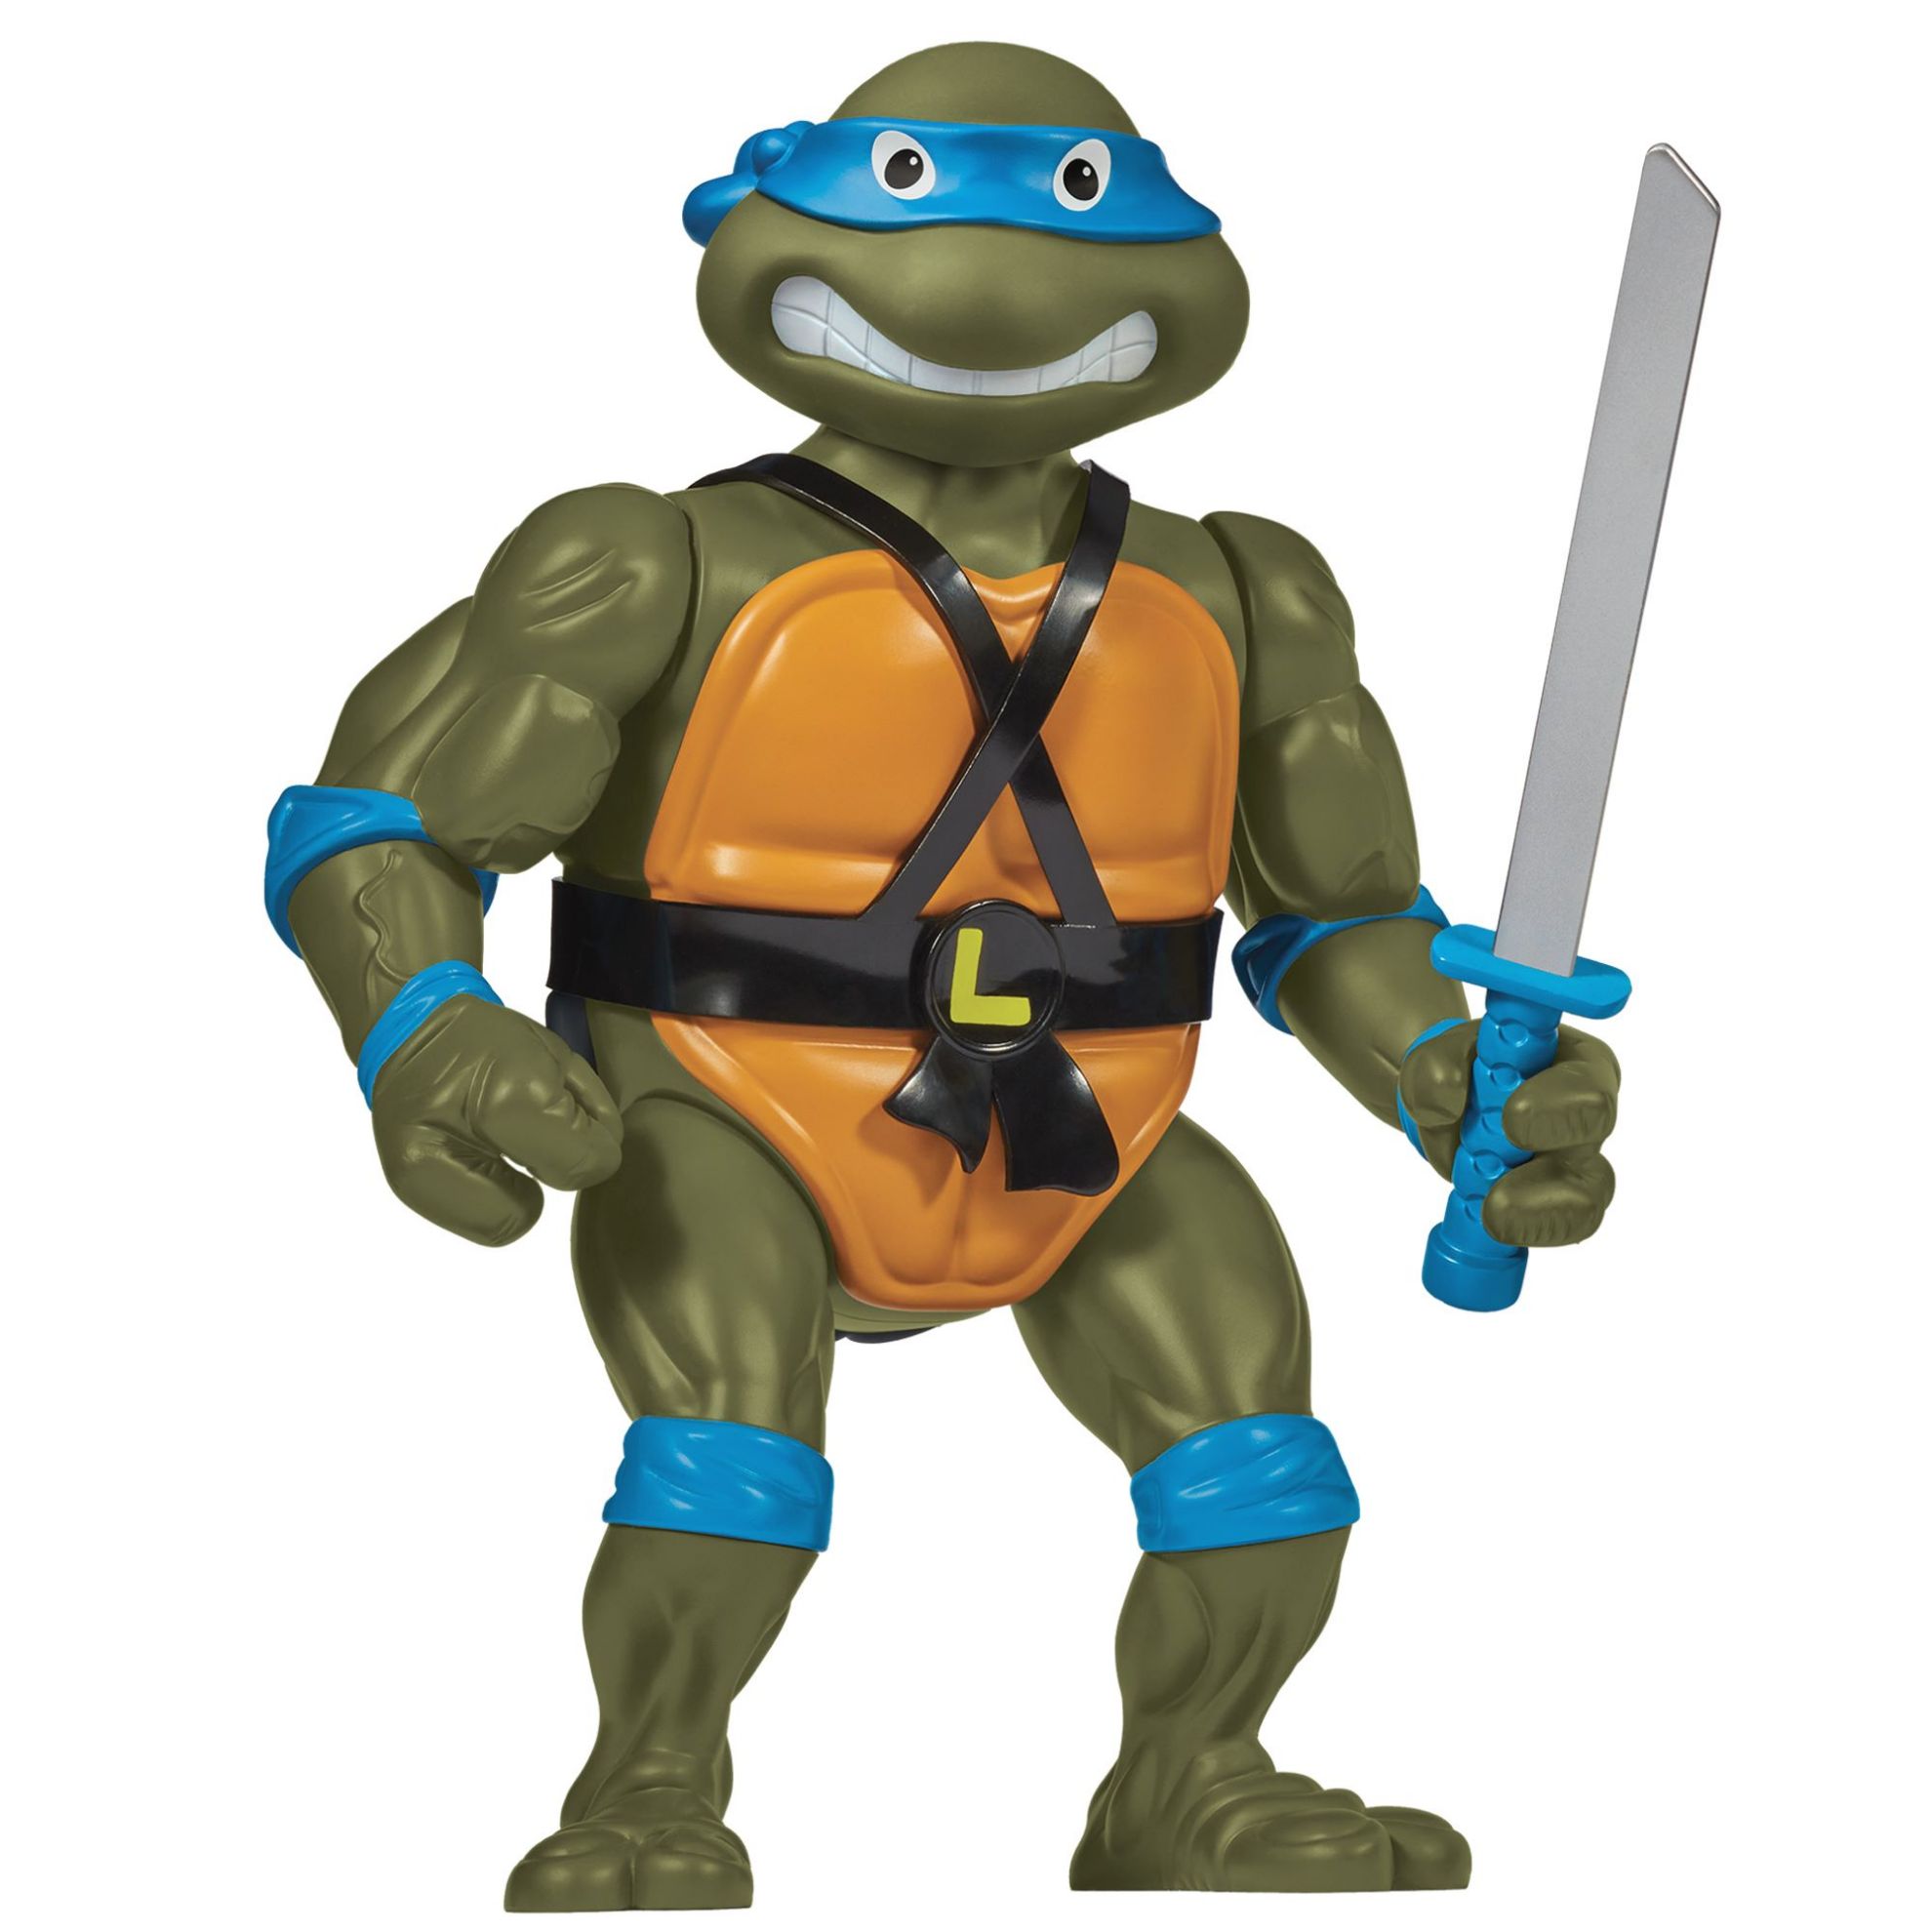 Teenage Mutant Ninja Turtles Classic Giant Leonardo